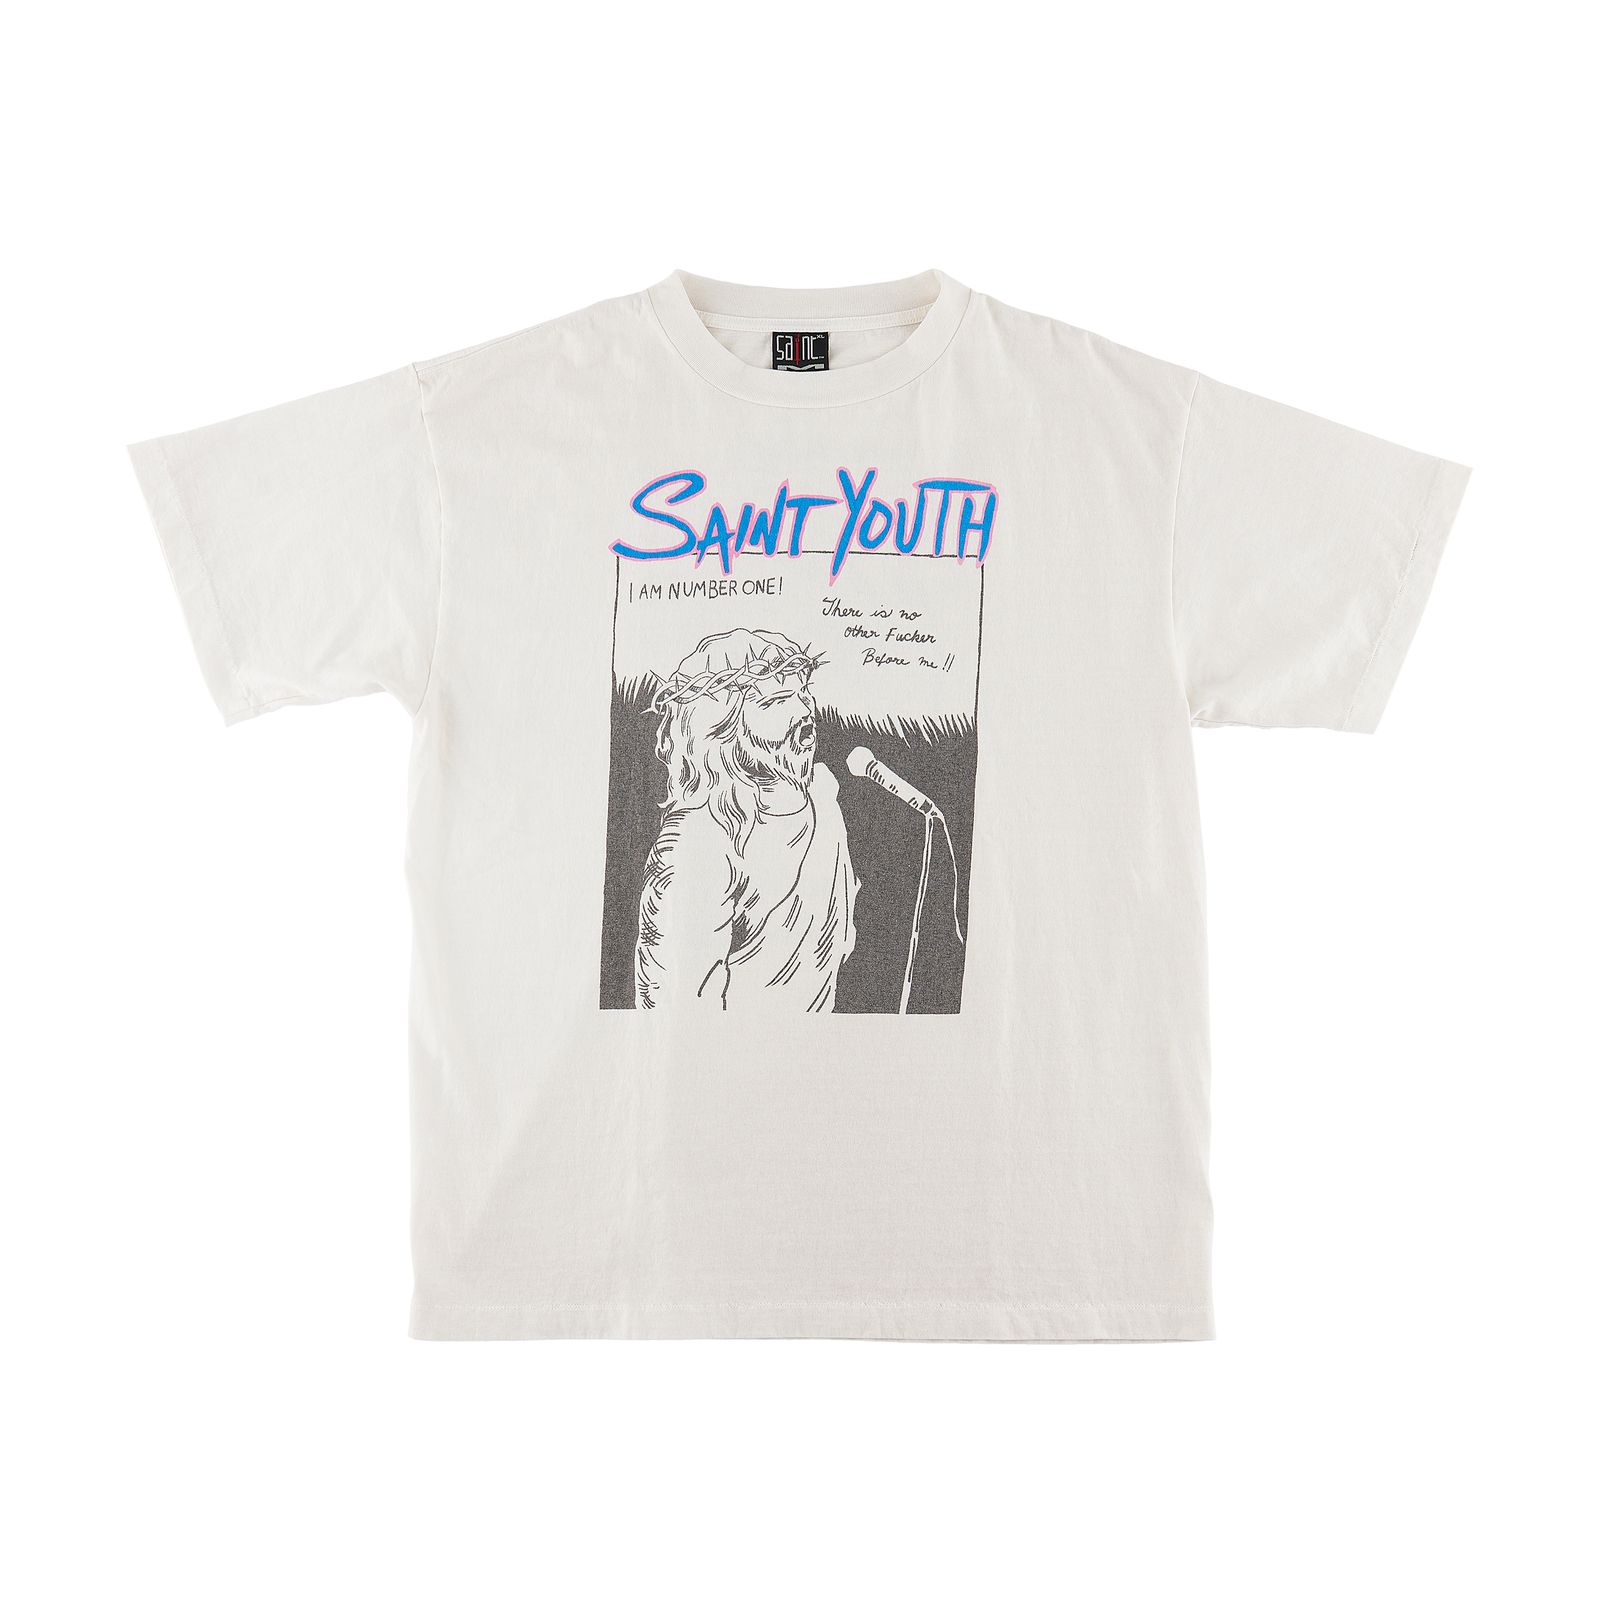 Saint michael セントマイケル saint youth Tシャツ S